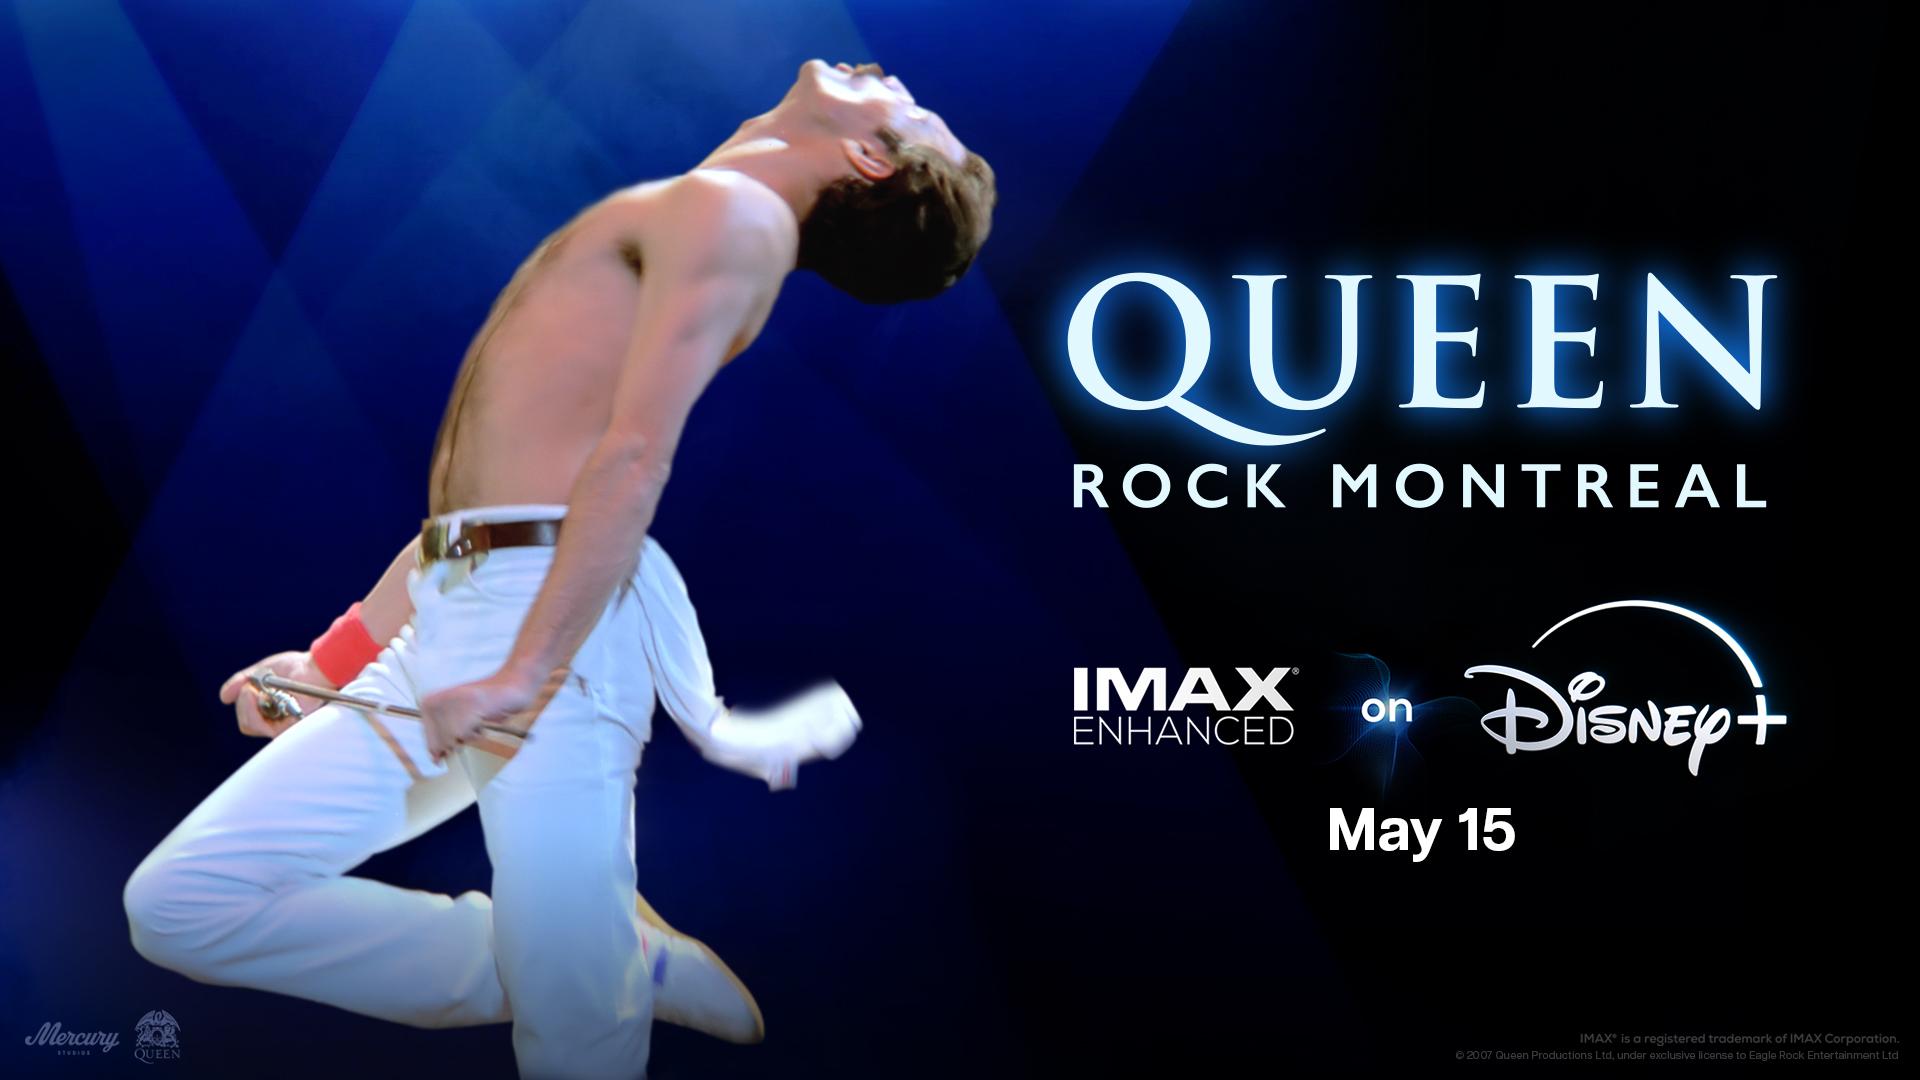 Queen Rock Montreal IMAX Enhanced poster